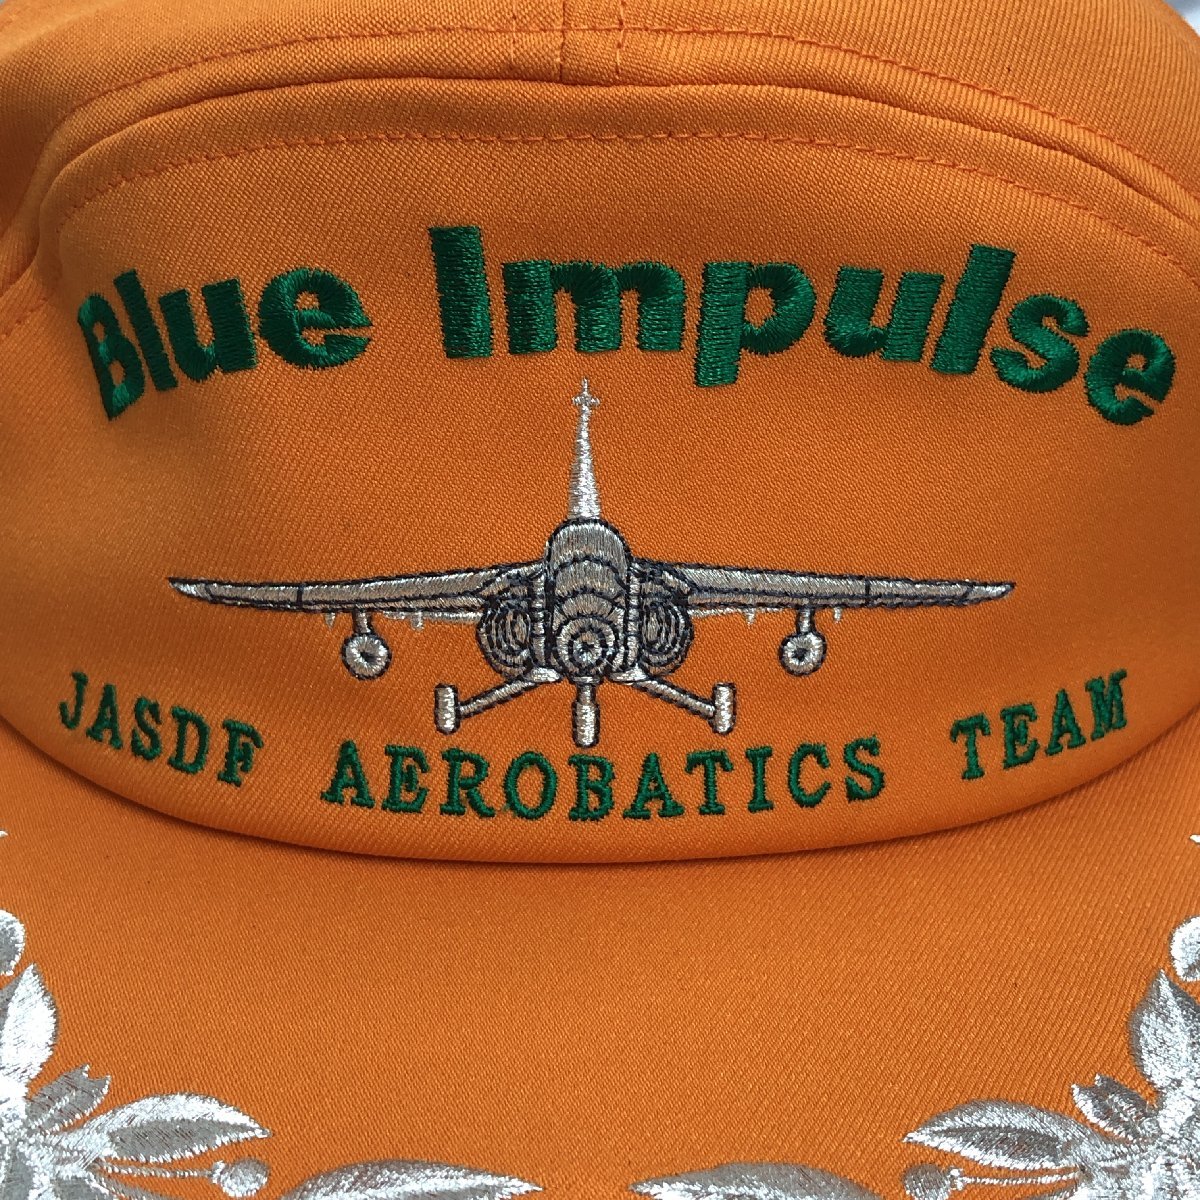 【未使用長期保管/インボイス登録店/KU】航空自衛隊 ブルーインパルス JASDF AEROBATIC TEAM キャップ オレンジ系 刺繍 帽子　MZ1204/0002_画像9